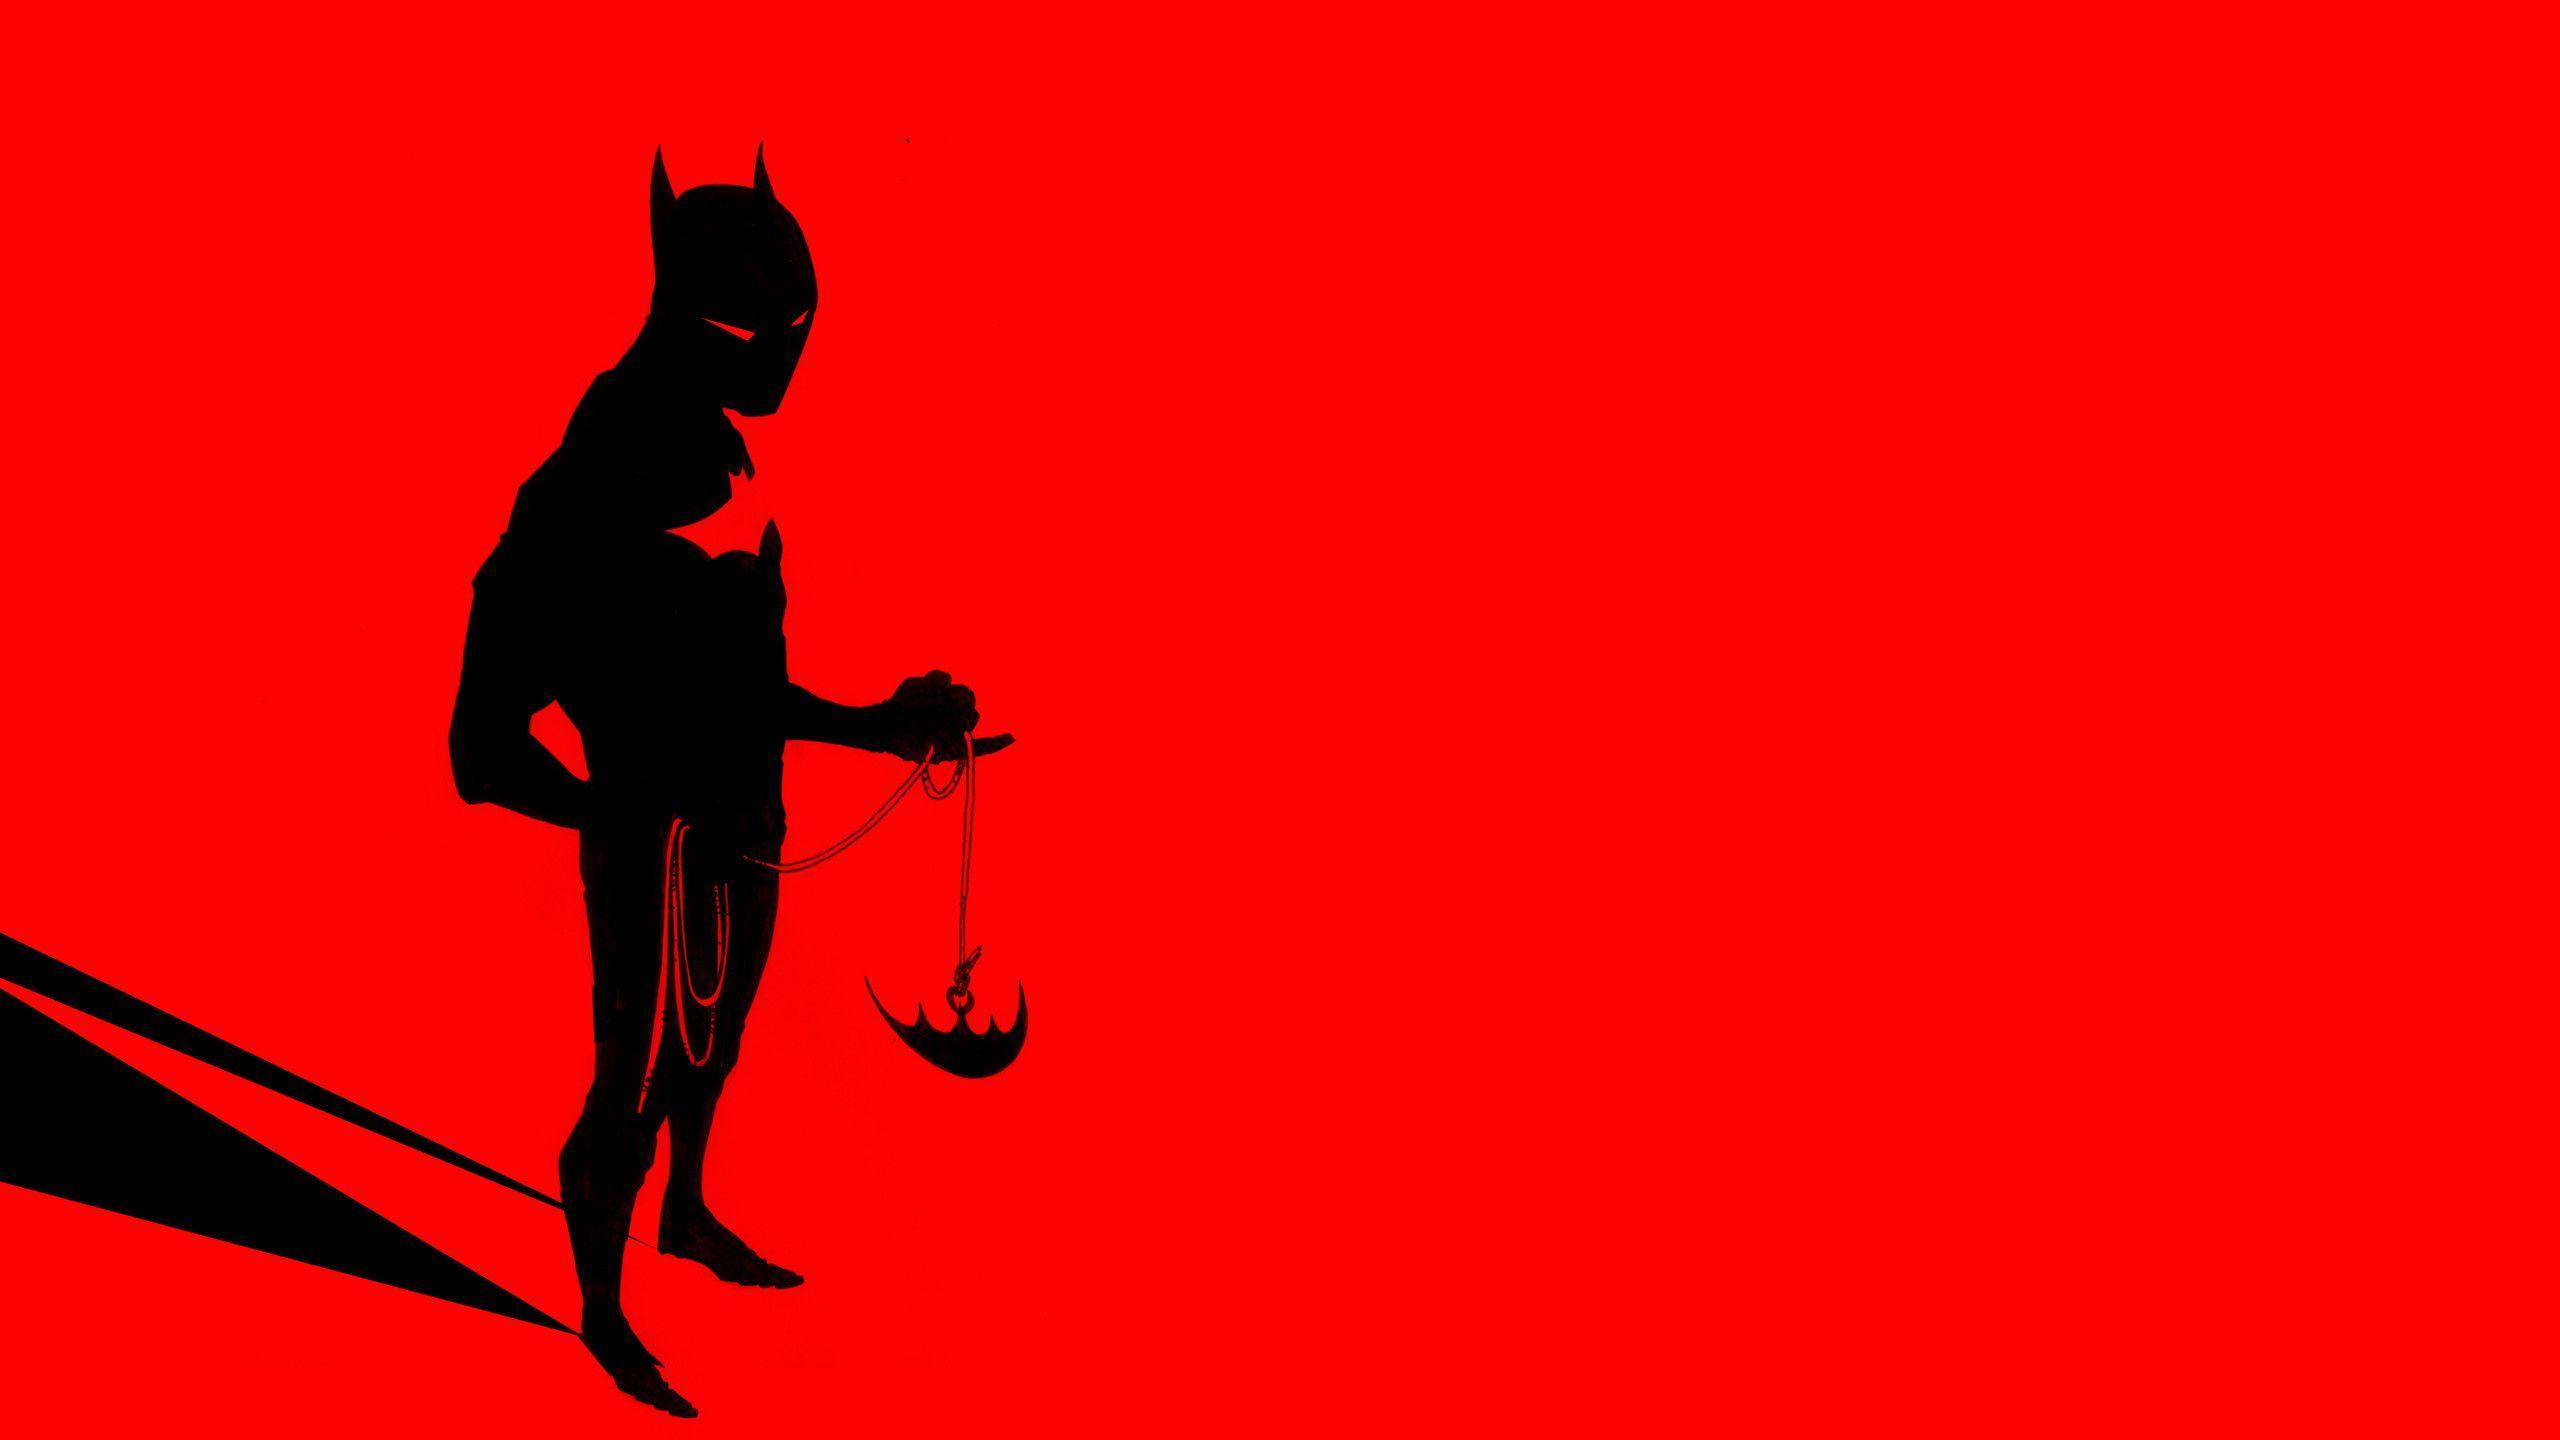 Batman Beyond Wallpaper, Quality Cool Batman Beyond